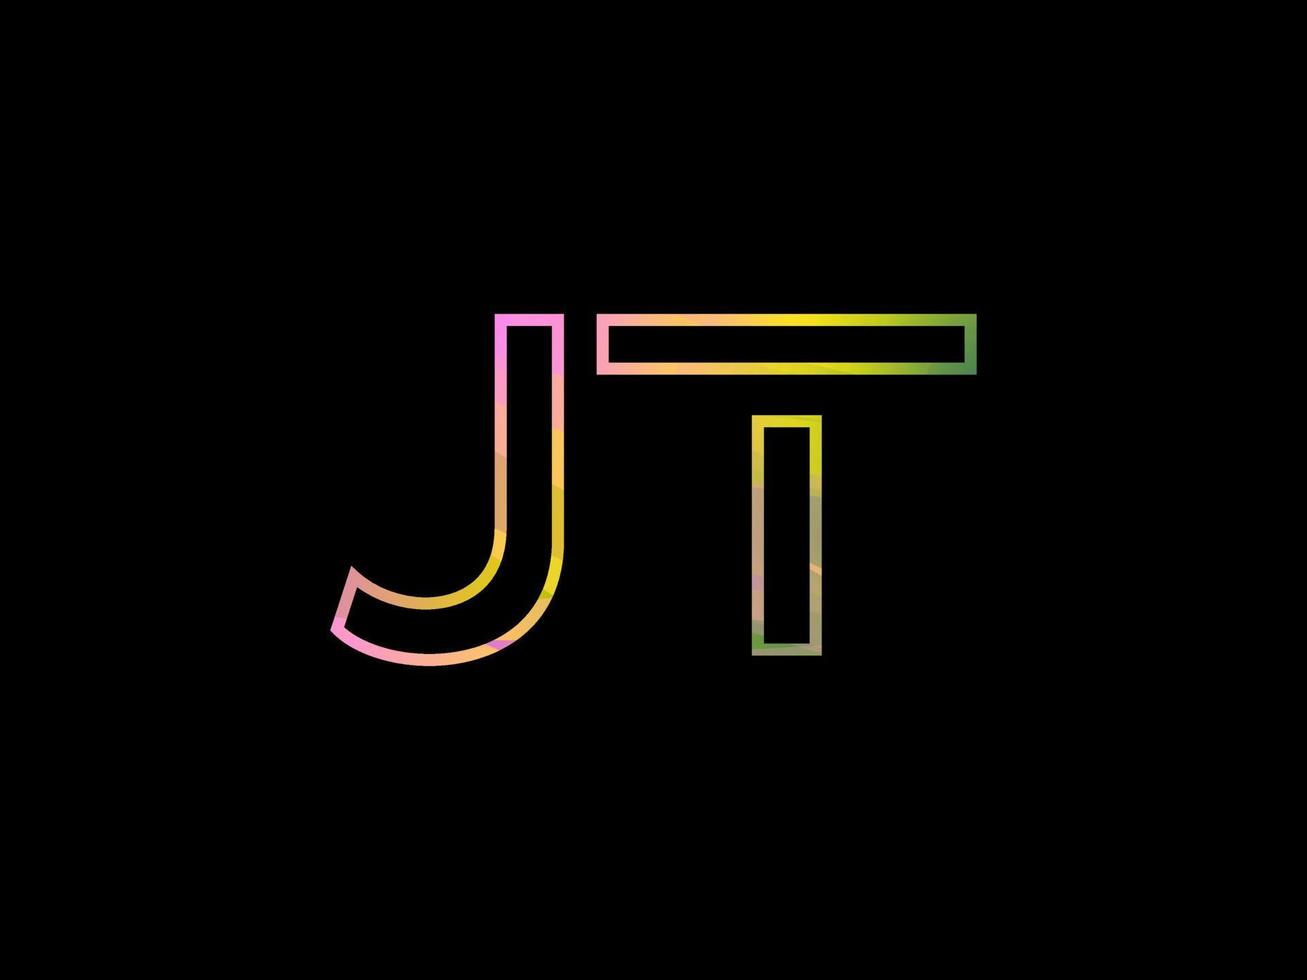 jt brev logotyp med färgrik regnbåge textur vektor. proffs vektor